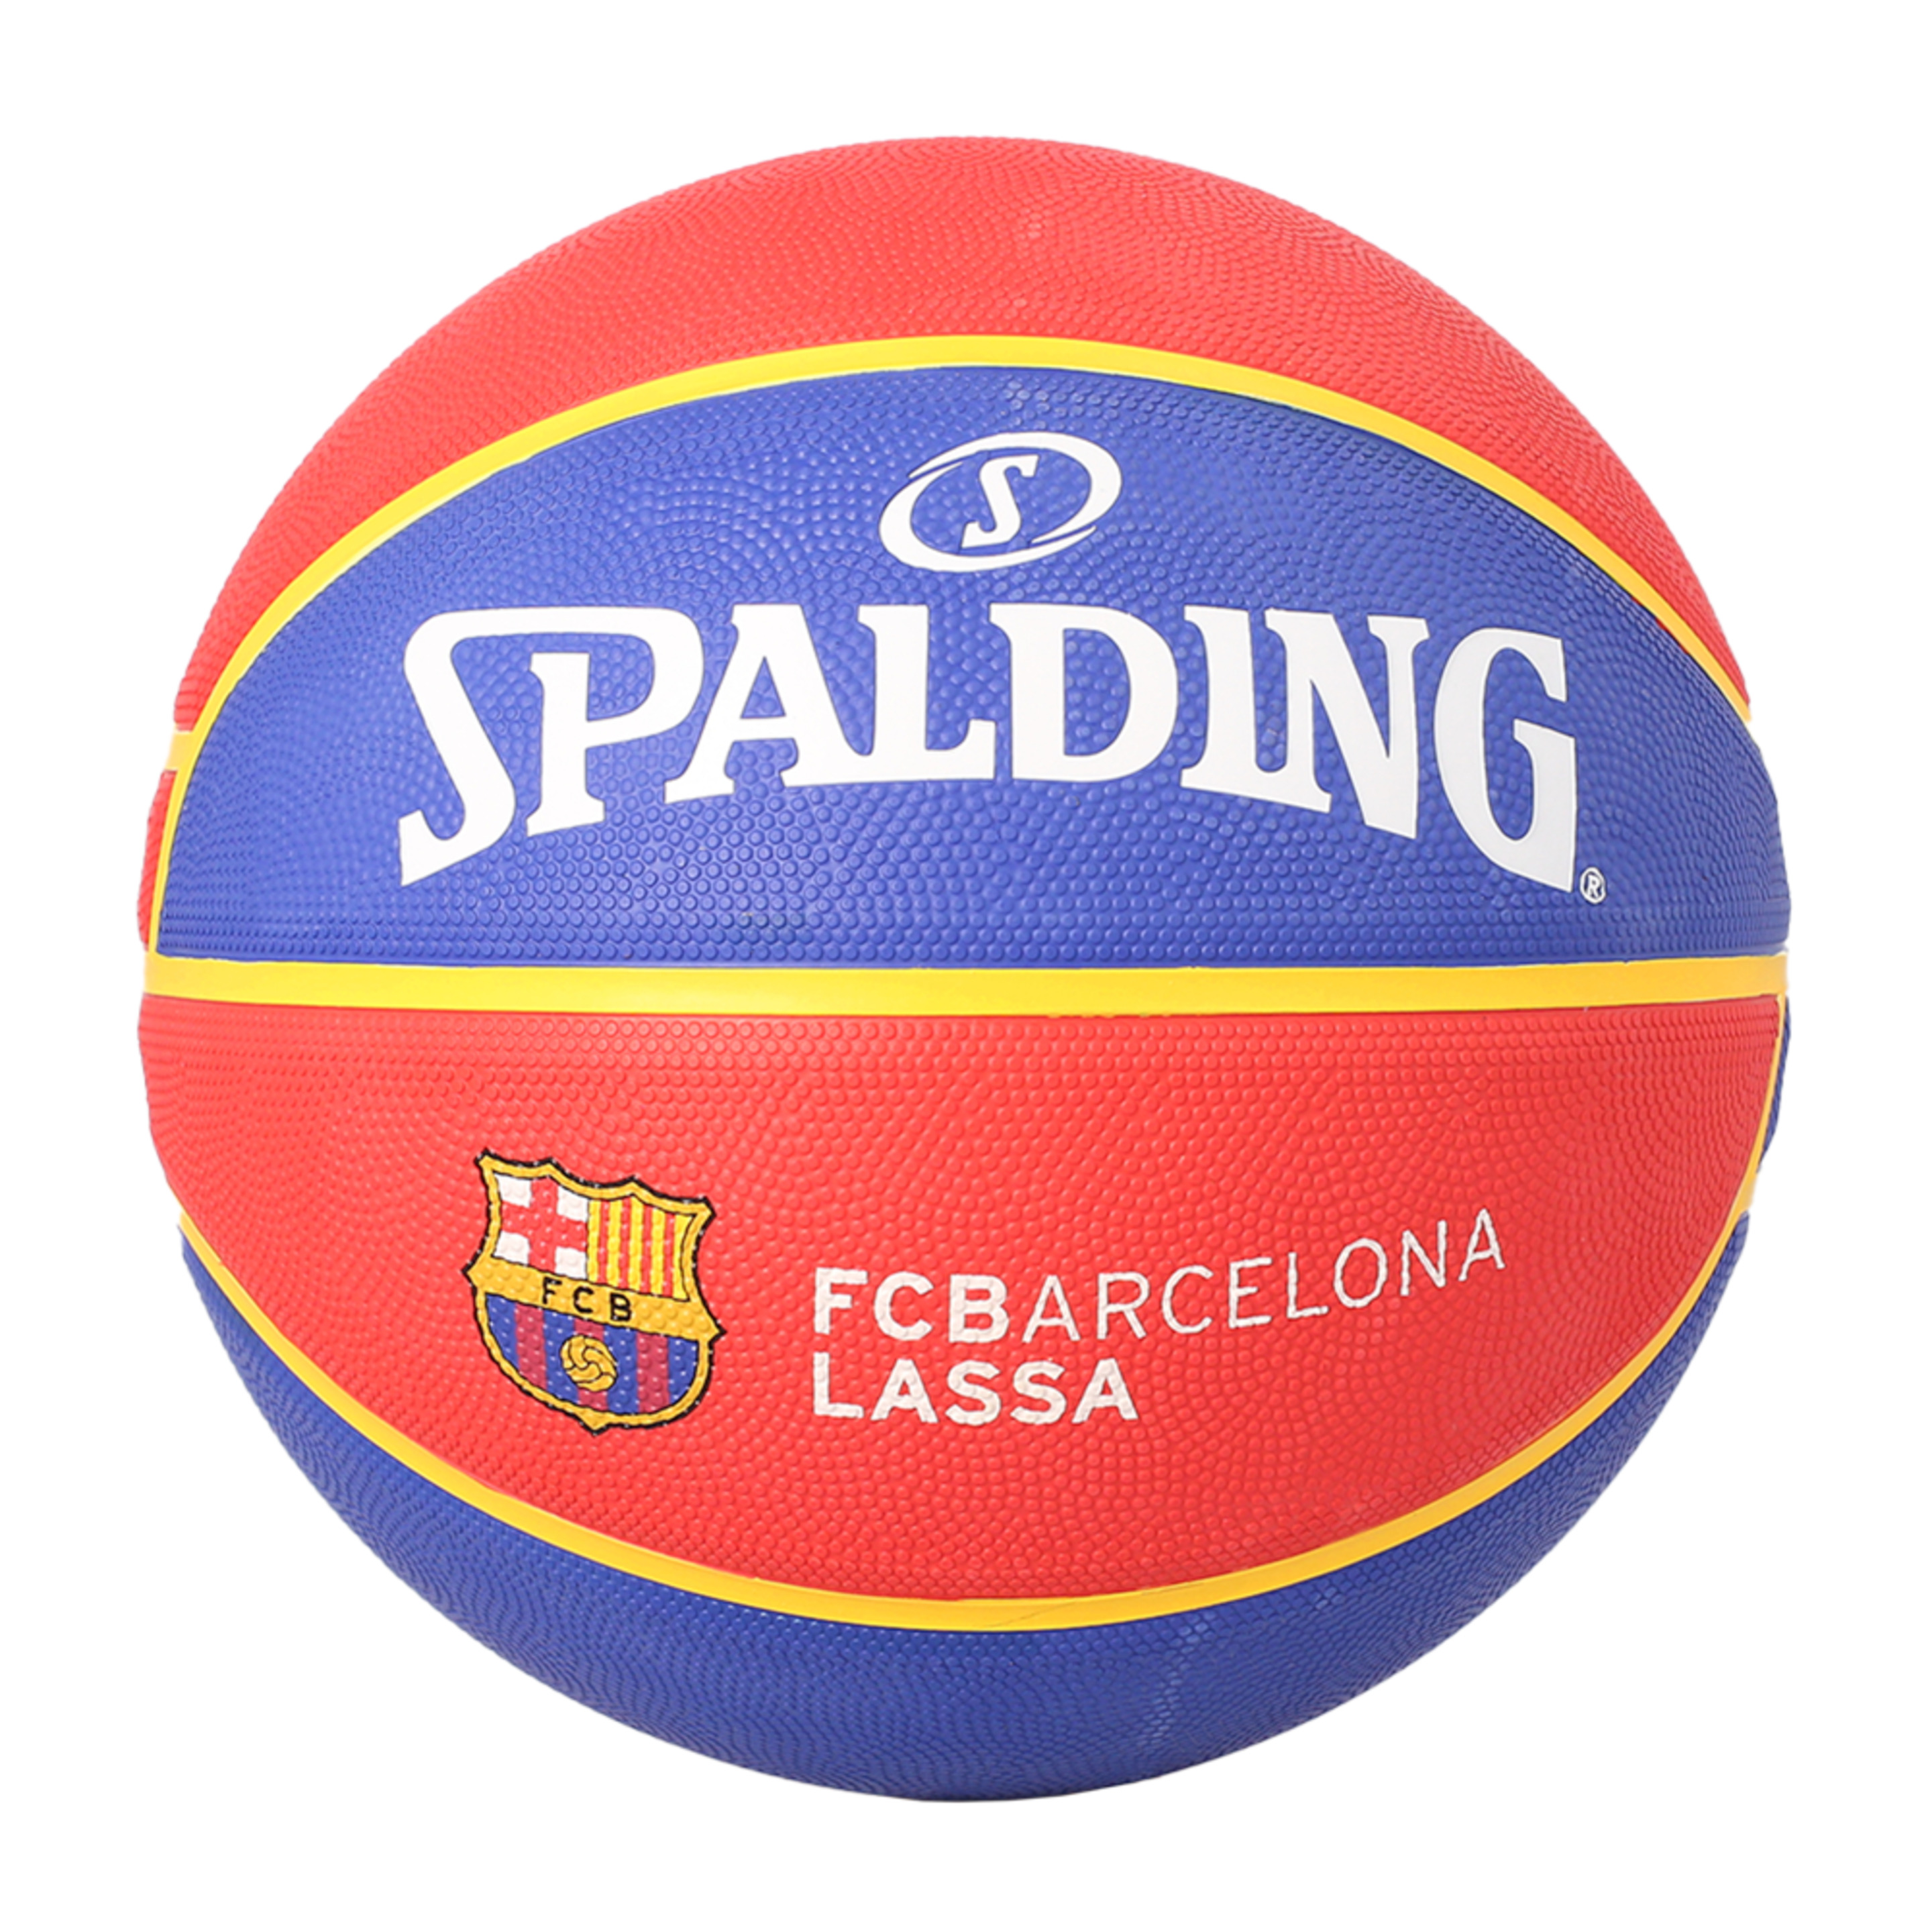 Spalding Fc Barcelona Euroleague Basquete Sz7 - azul-claro-rojo - 